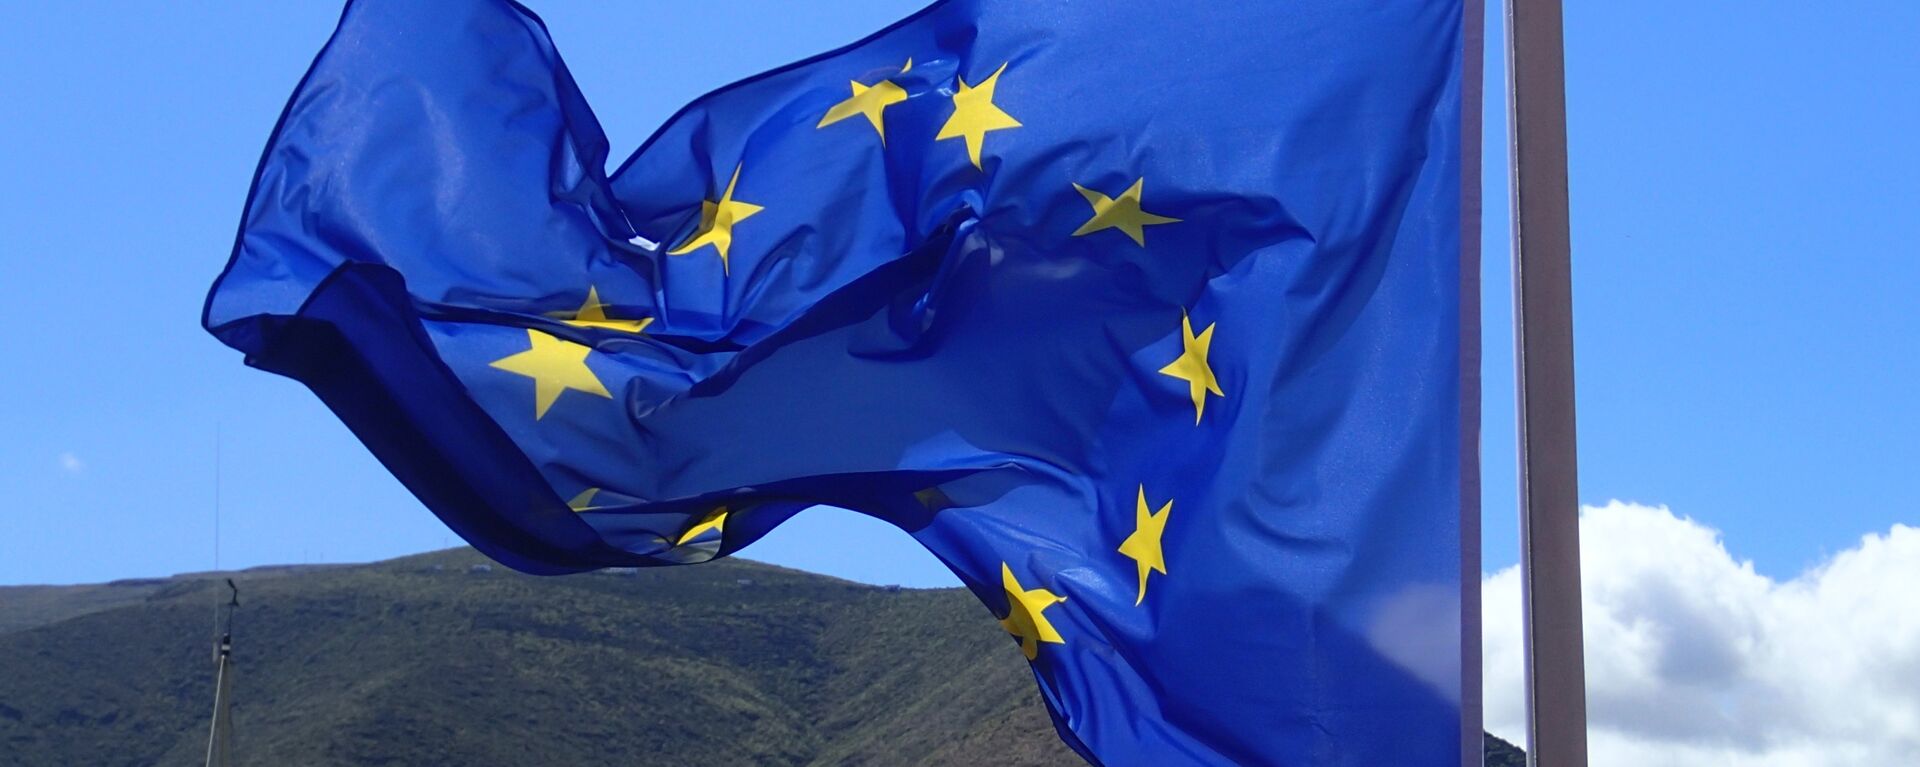 Bandera de la Unión Europea - Sputnik Mundo, 1920, 18.10.2021